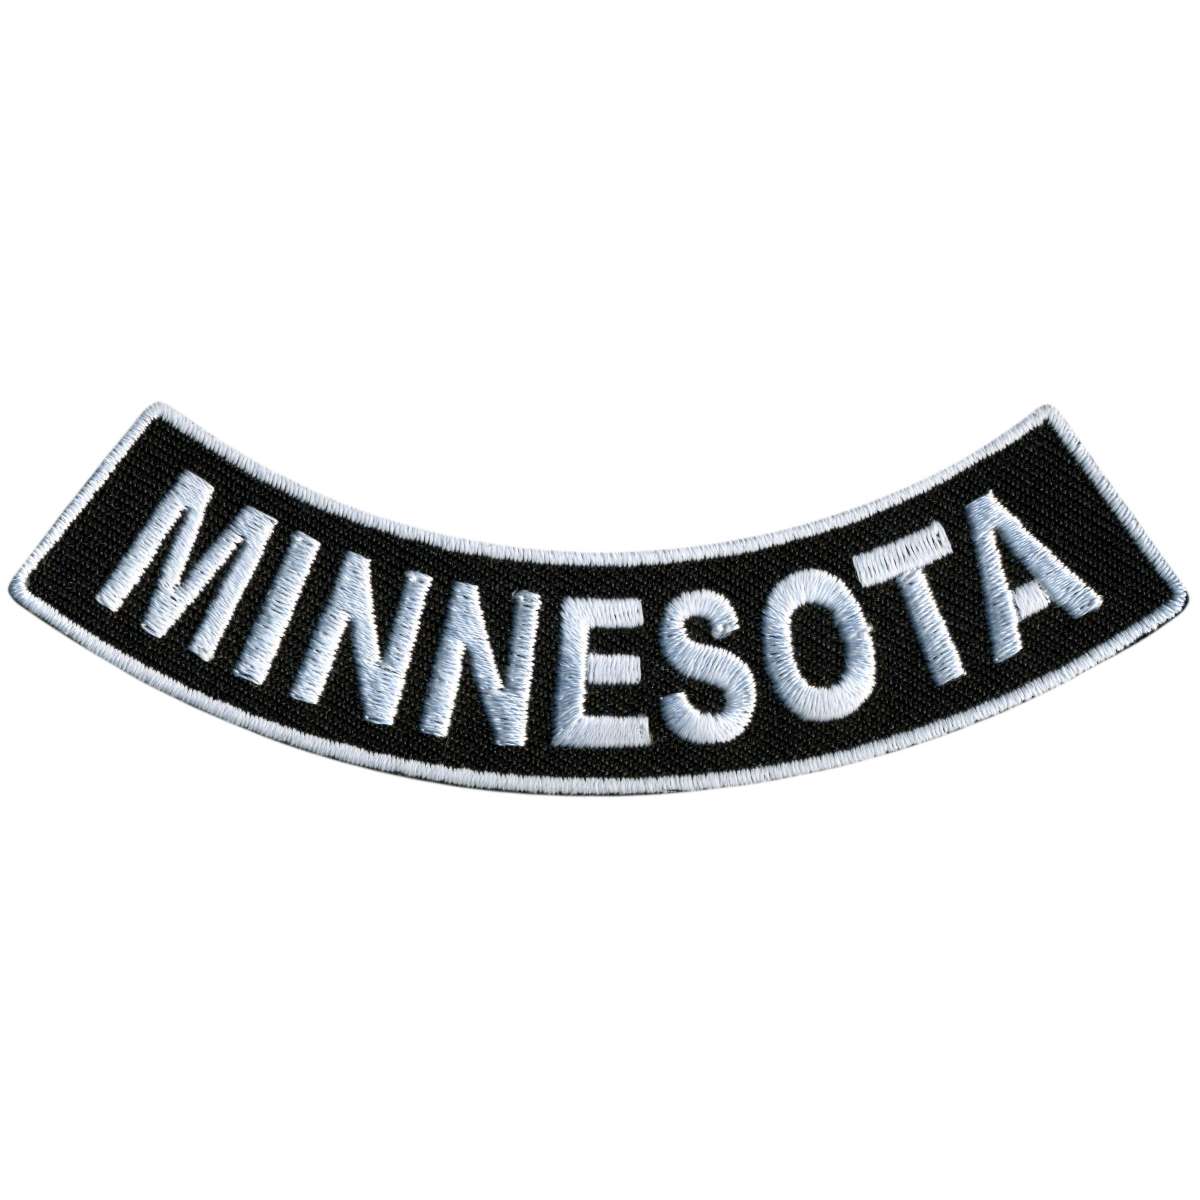 Hot Leathers Minnesota 4” X 1” Bottom Rocker Patch PPM5046